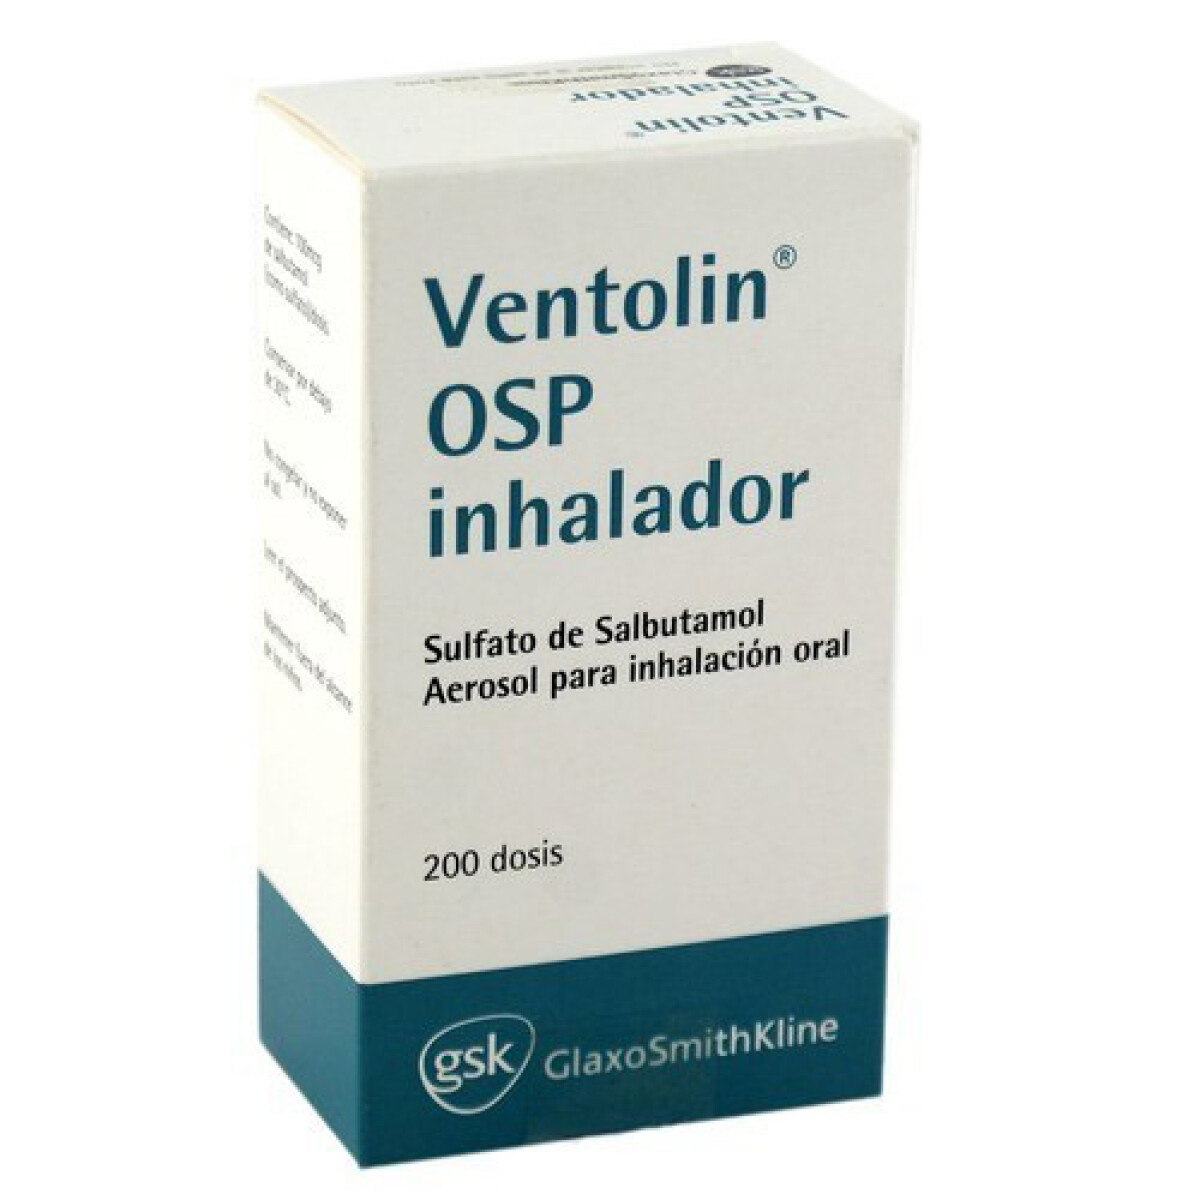 Ventolin Osp Inhalador x 200 DOS 